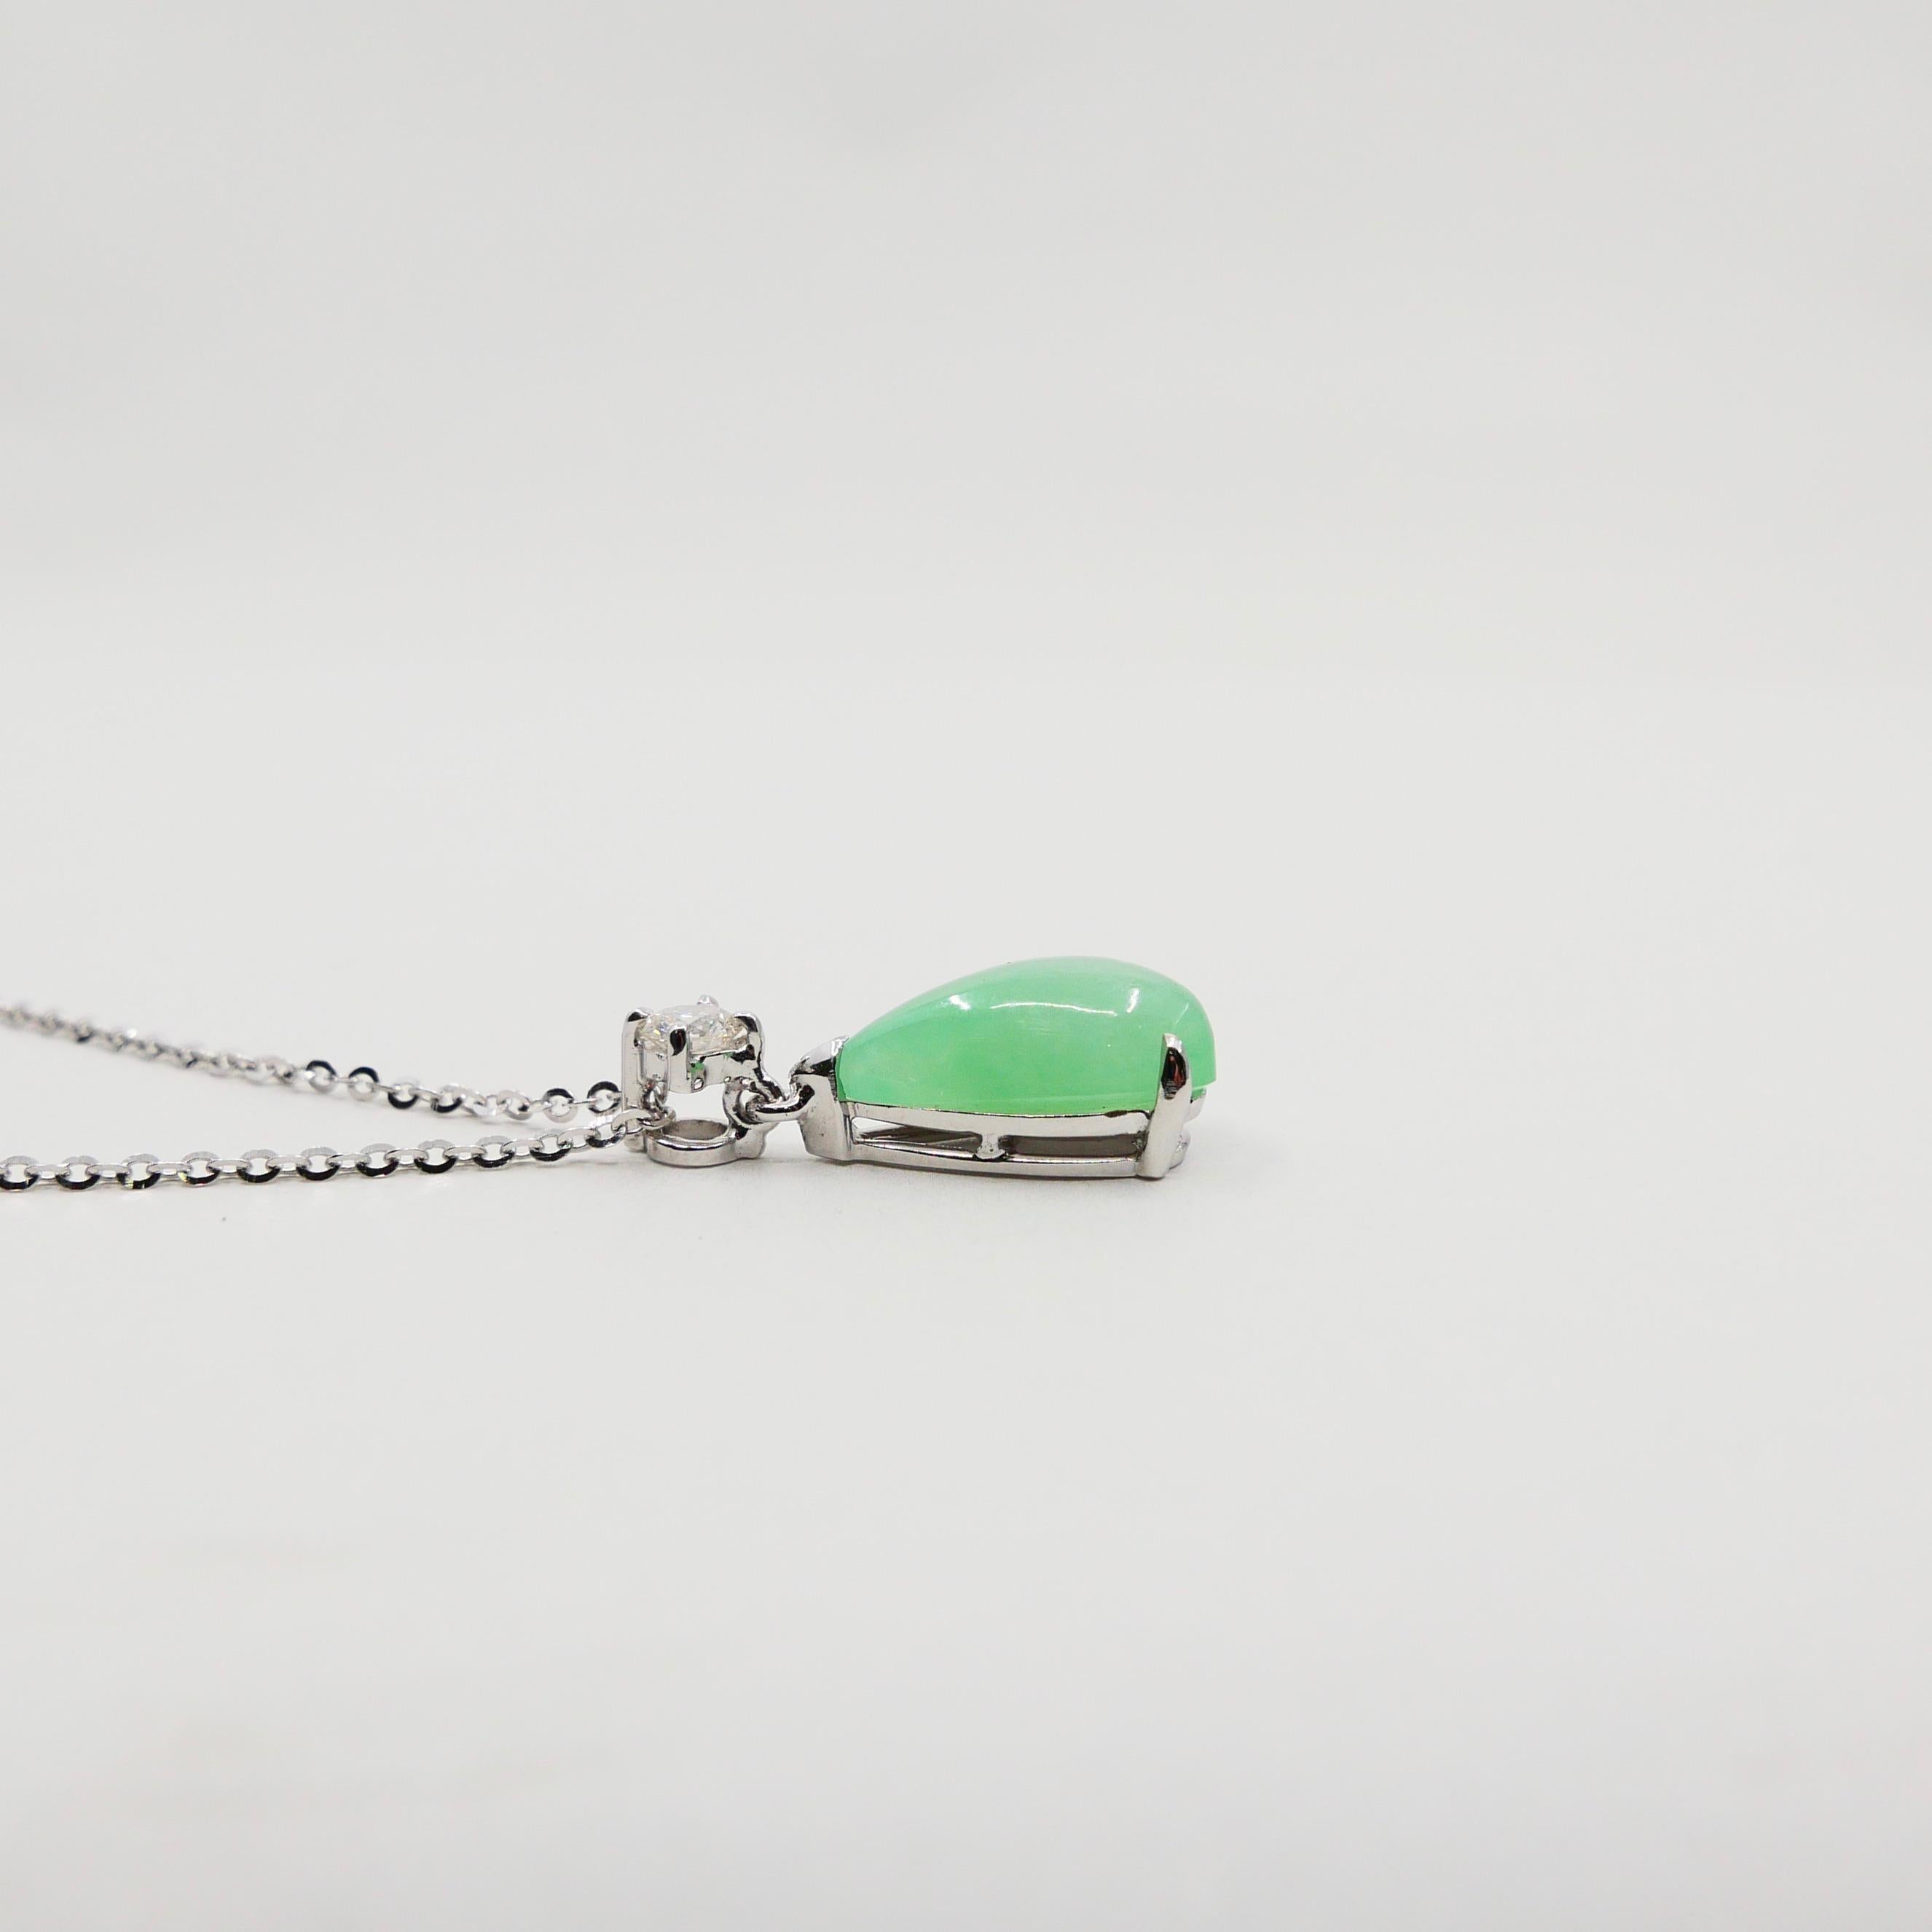 Certified Type A Jadeite Jade Diamond Pendant Drop Necklace, Light Green Color 1